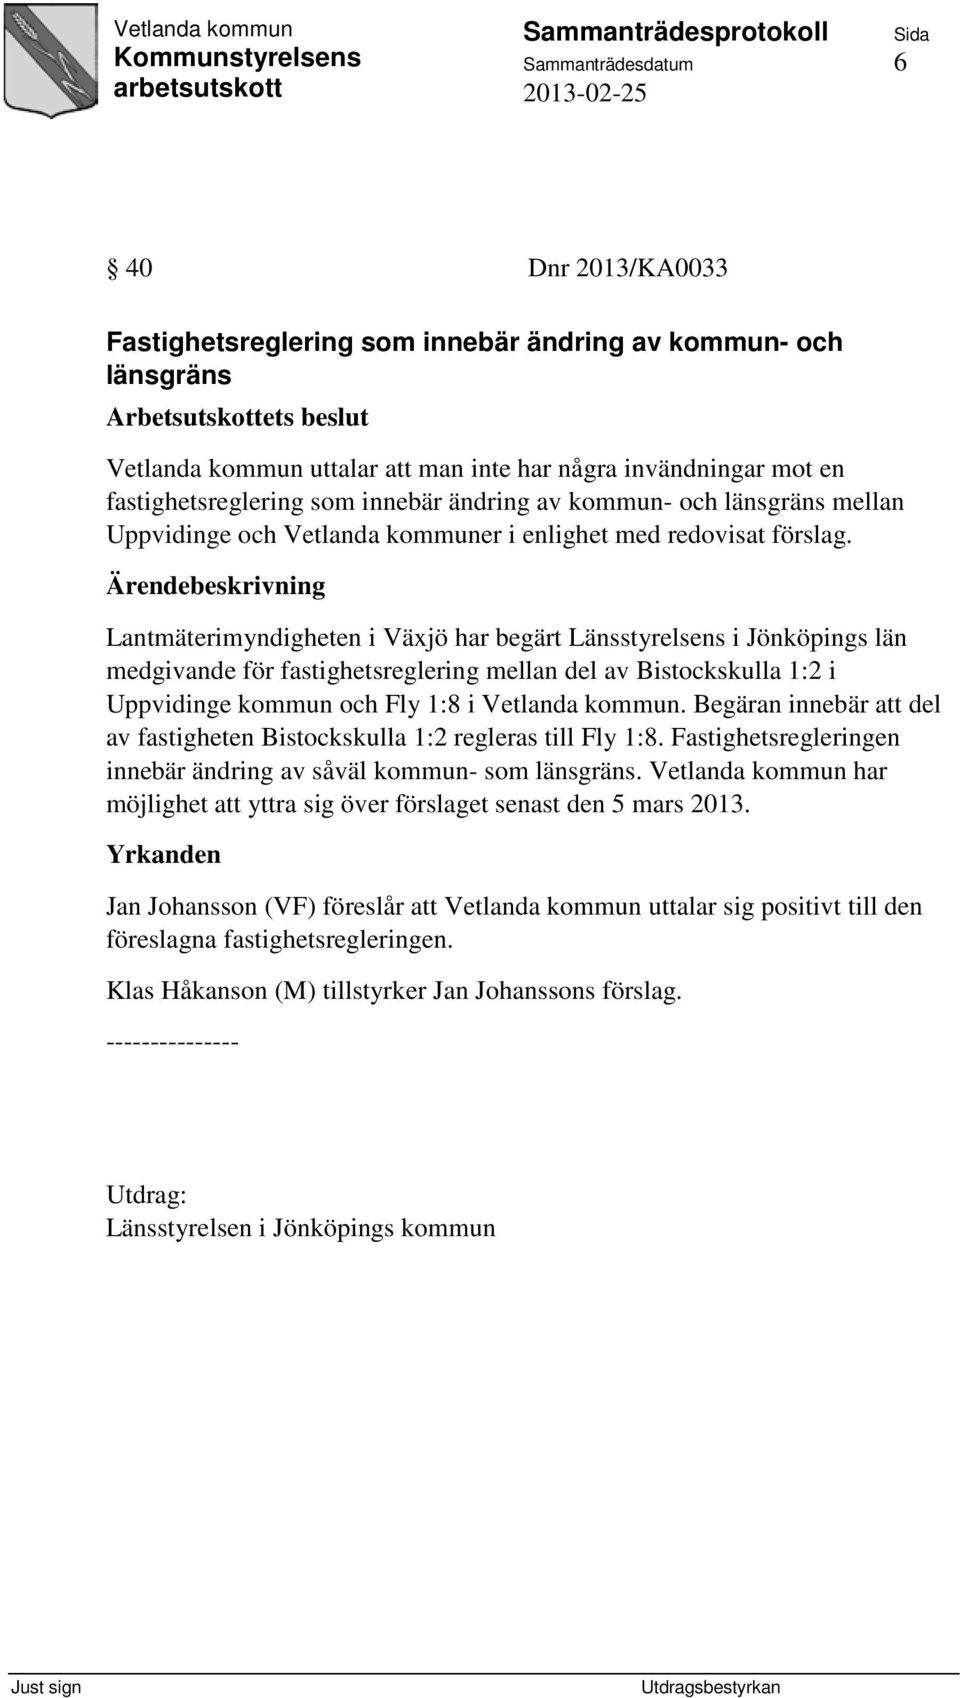 Lantmäterimyndigheten i Växjö har begärt Länsstyrelsens i Jönköpings län medgivande för fastighetsreglering mellan del av Bistockskulla 1:2 i Uppvidinge kommun och Fly 1:8 i Vetlanda kommun.